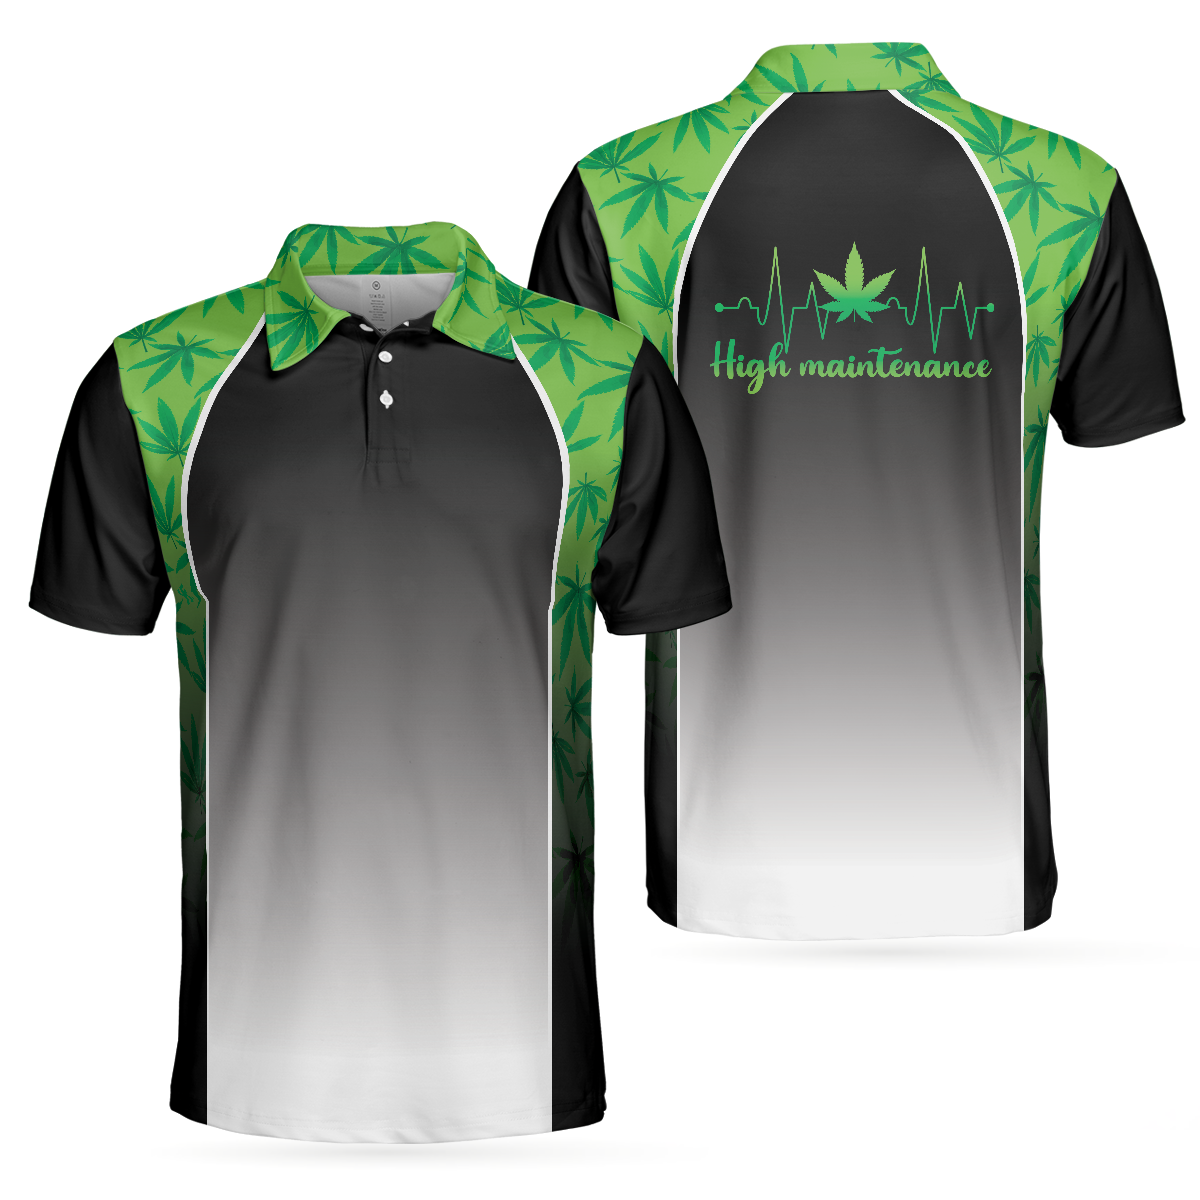 Men Polo Shirt - High Maintenance Weed Men Polo Shirt, Green Weed Polo Shirt, Black Tie Dye Weed Pattern Polo Shirt For Men